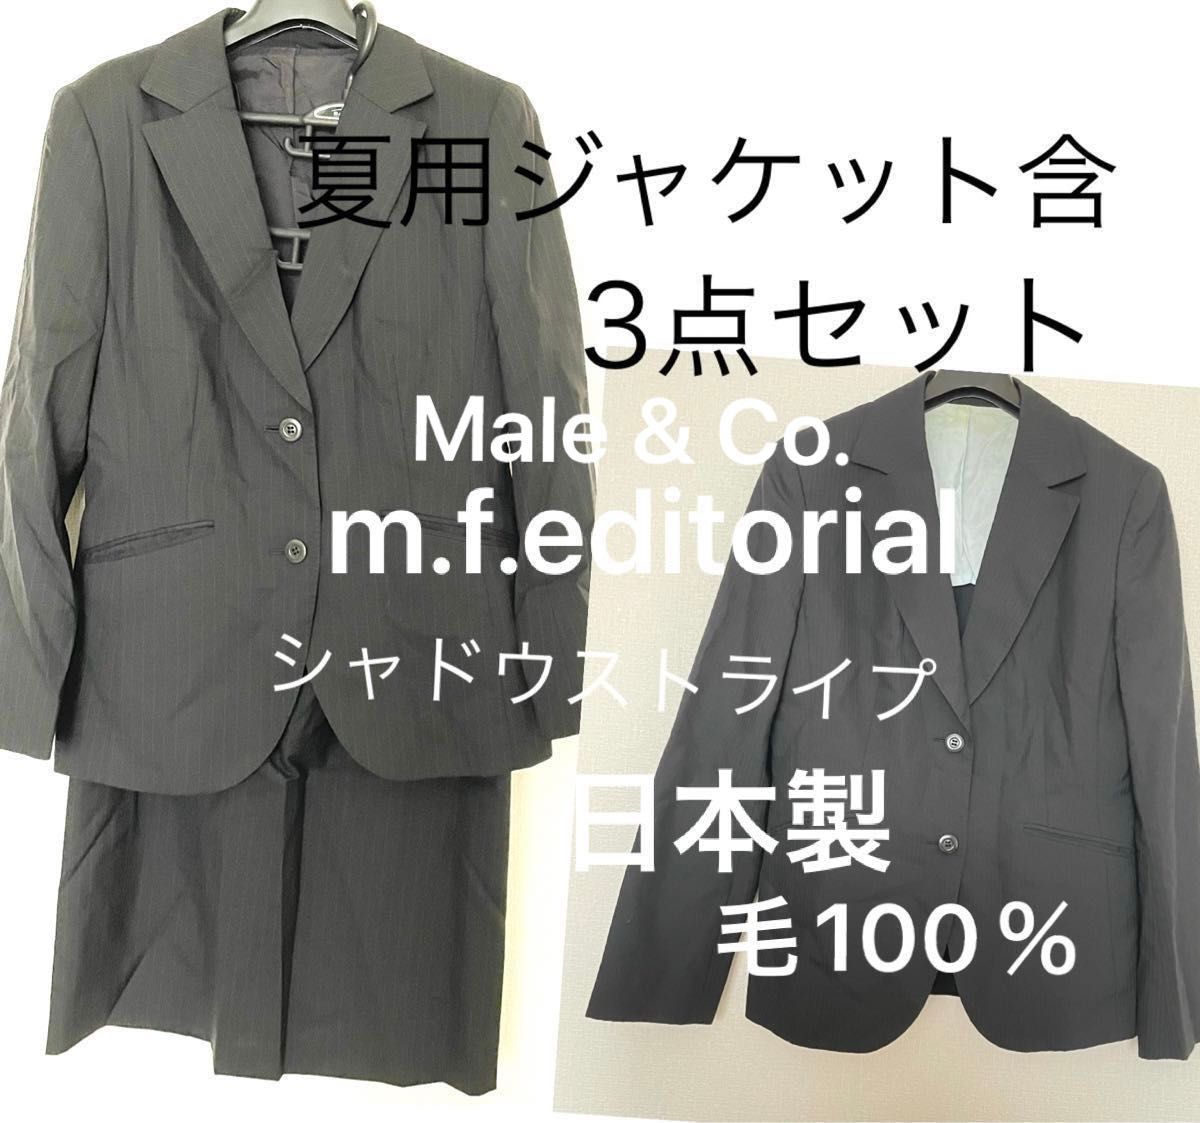 日本製 スーツ 夏用 ジャケット スカート セットアップ 上下 3点 セット M L シャドウストライプ ブラック 黒 フォーマル